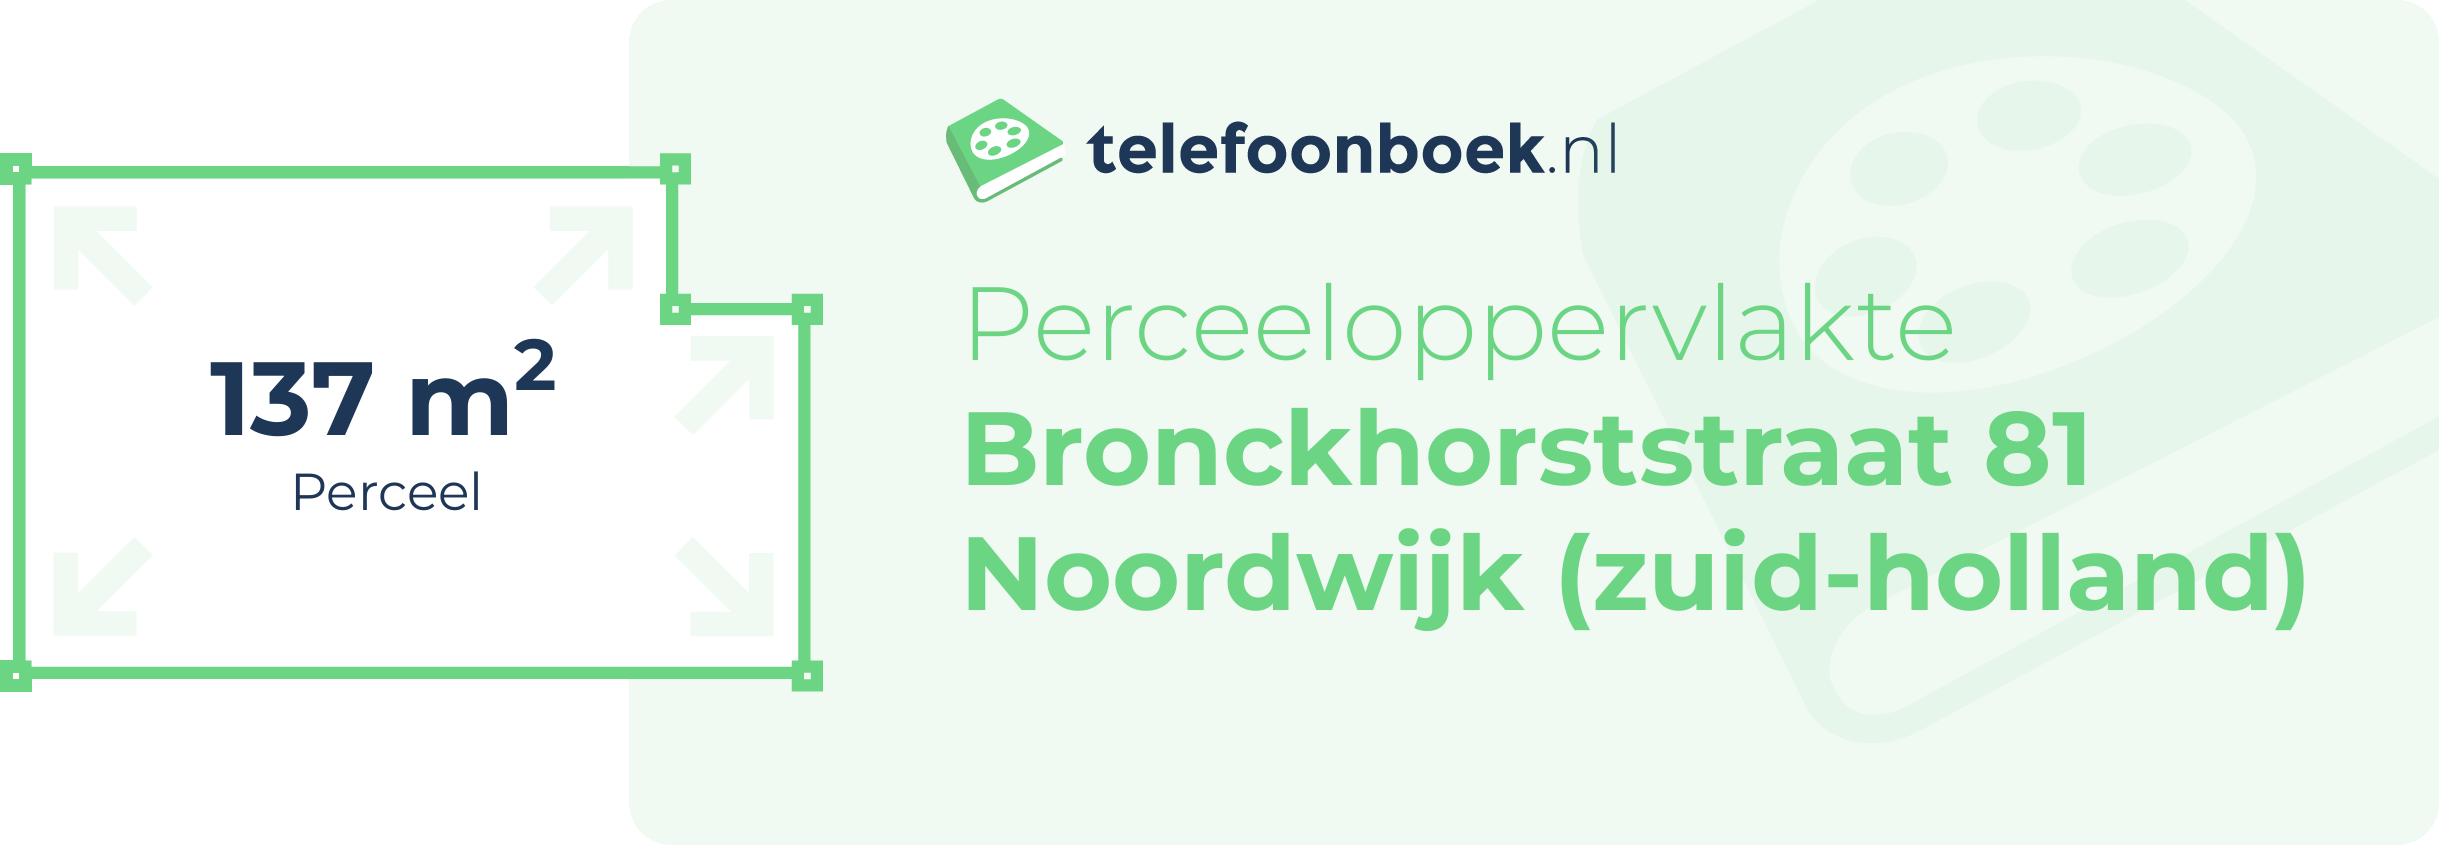 Perceeloppervlakte Bronckhorststraat 81 Noordwijk (Zuid-Holland)